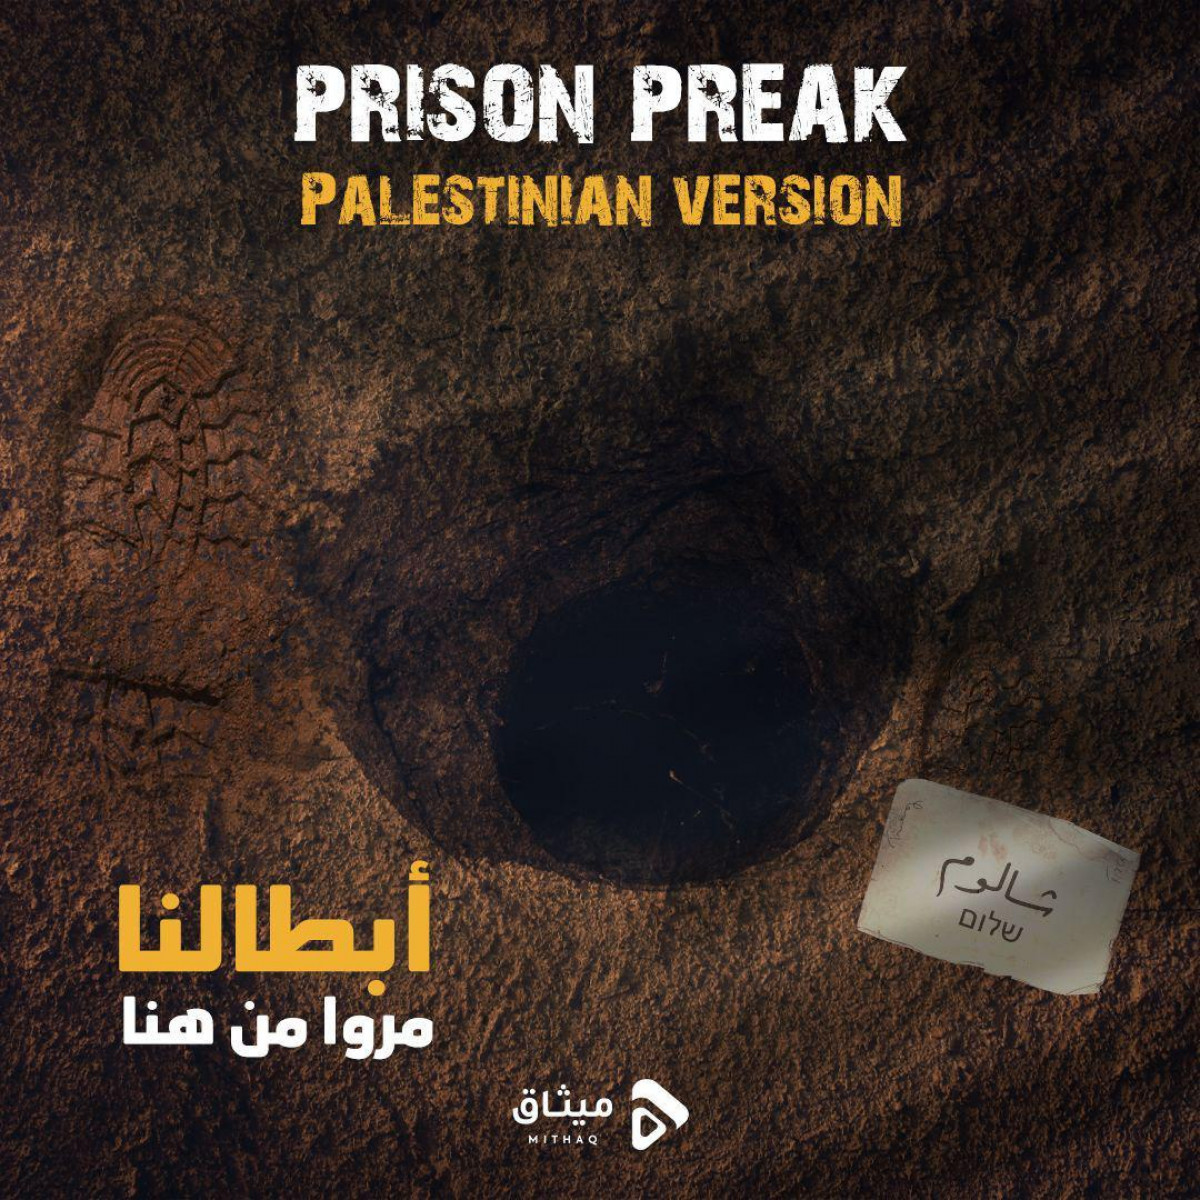 PRISON PREAK PALESTINIAN VERSION